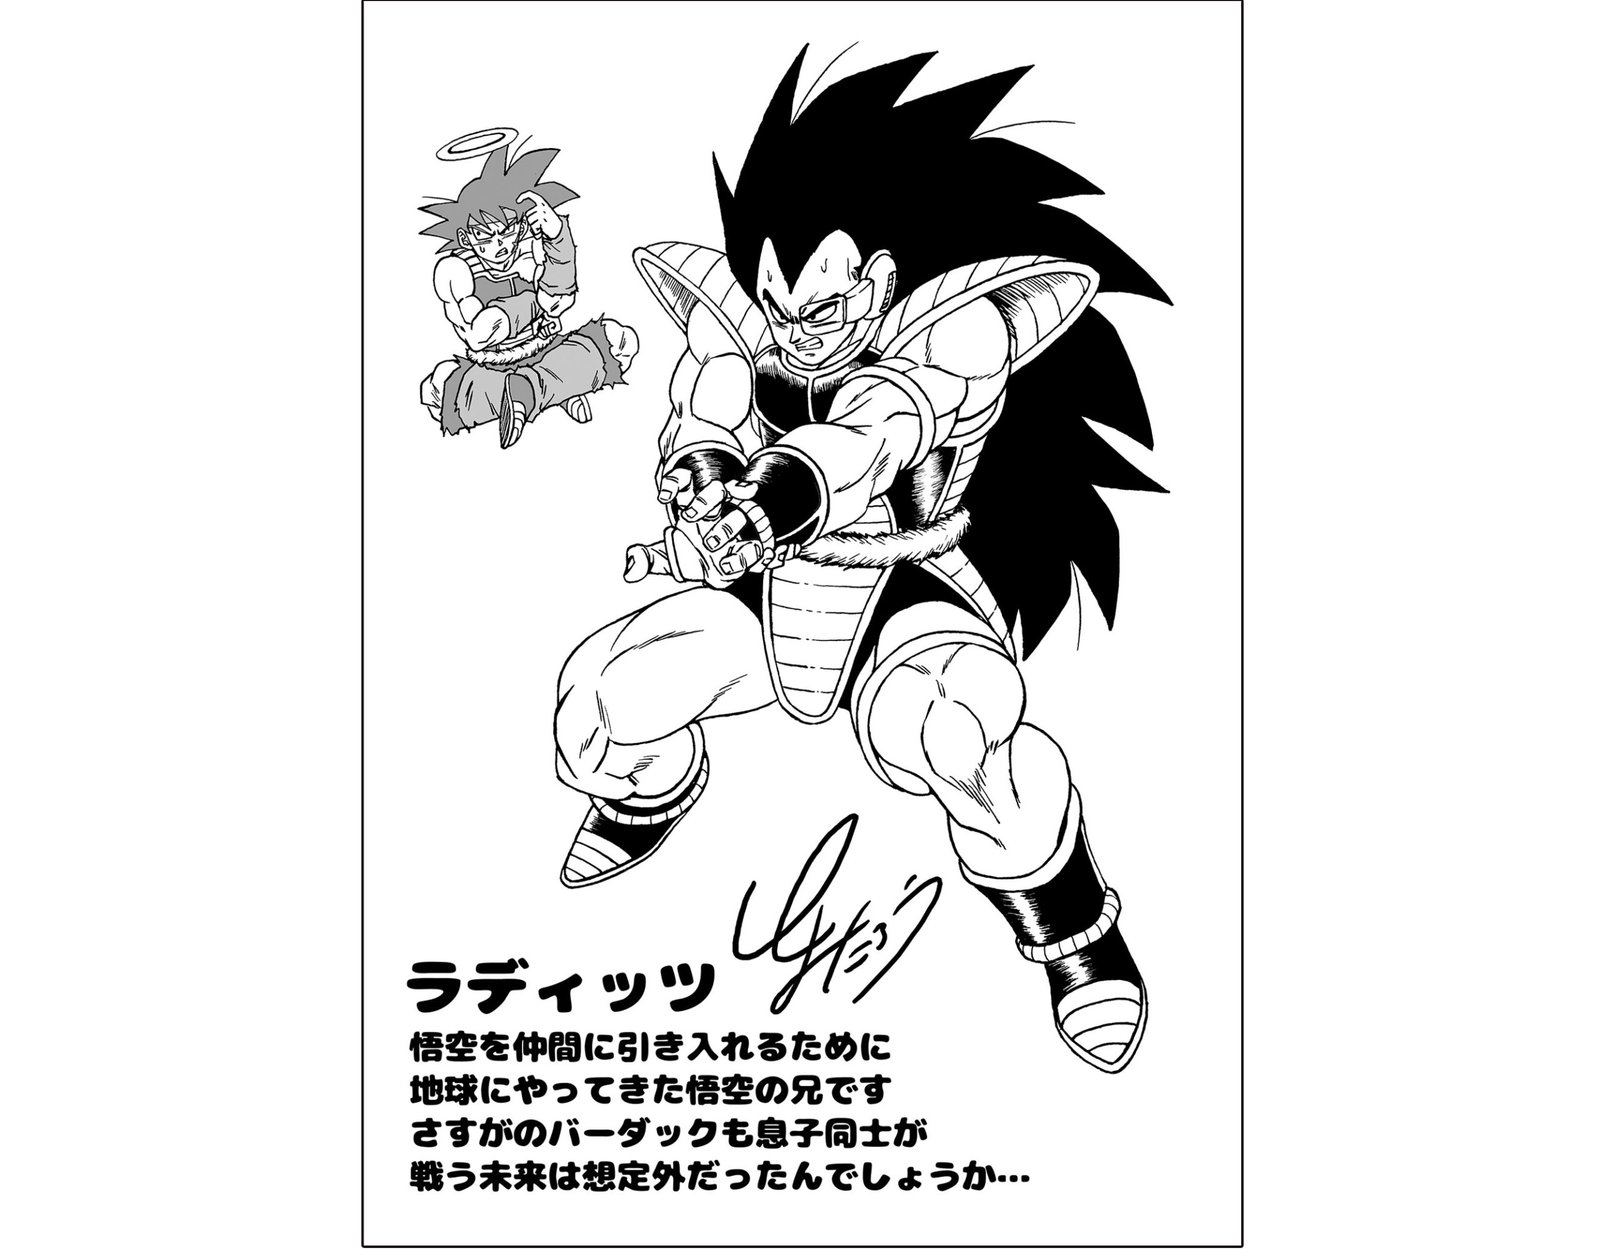 Kami Sama Explorer 👹👒 on X: Toyotarou - O Goku de cabelo prateado é  totalmente diferente e seu poder e personalidades mudam. Isso não é normal,  então essa nova forma do Goku